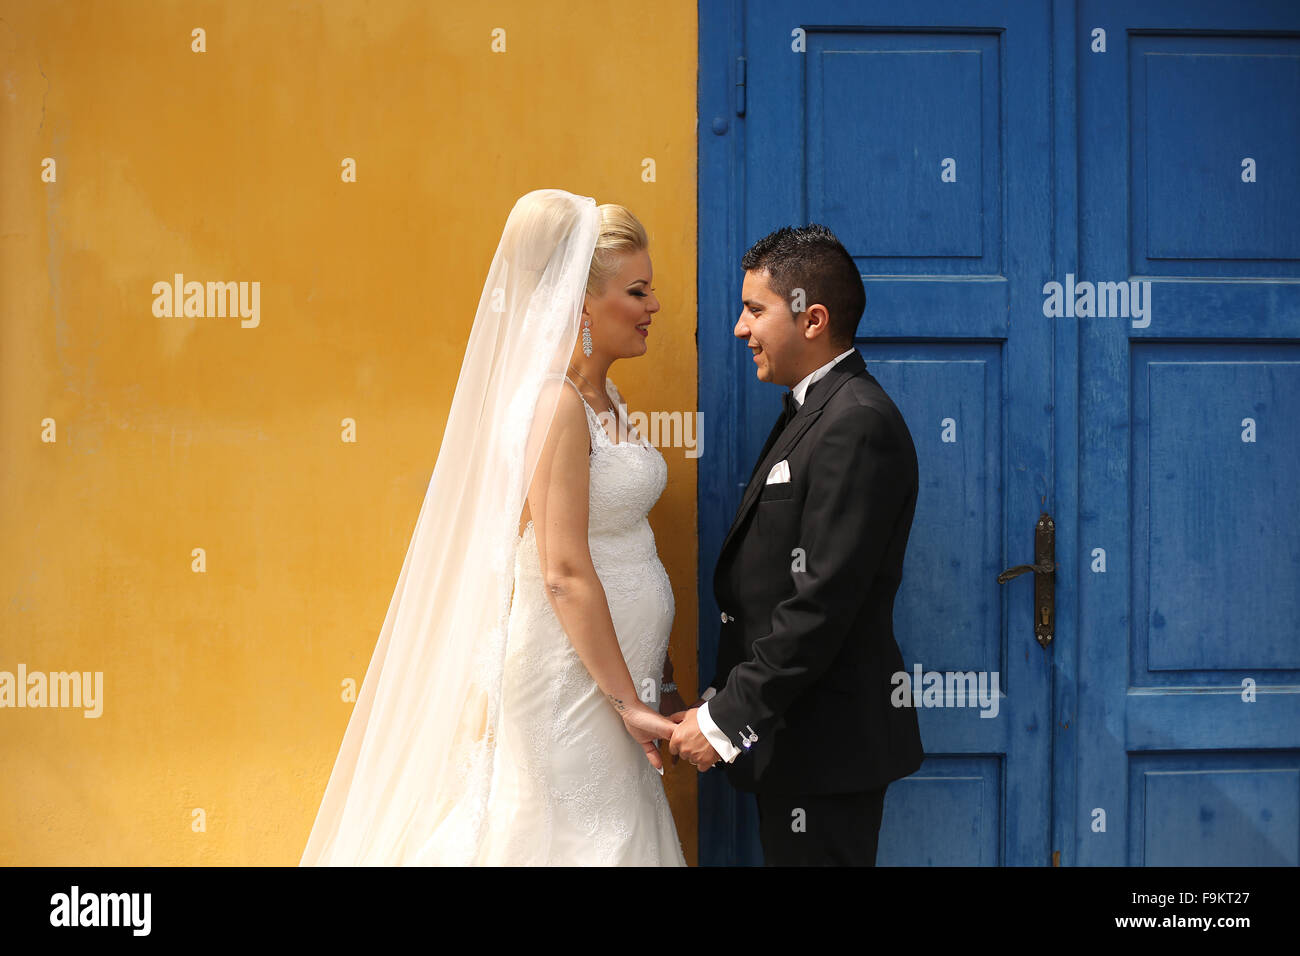 Schöne Braut und Bräutigam Hand in Hand neben bunten Tür und Wand Stockfoto